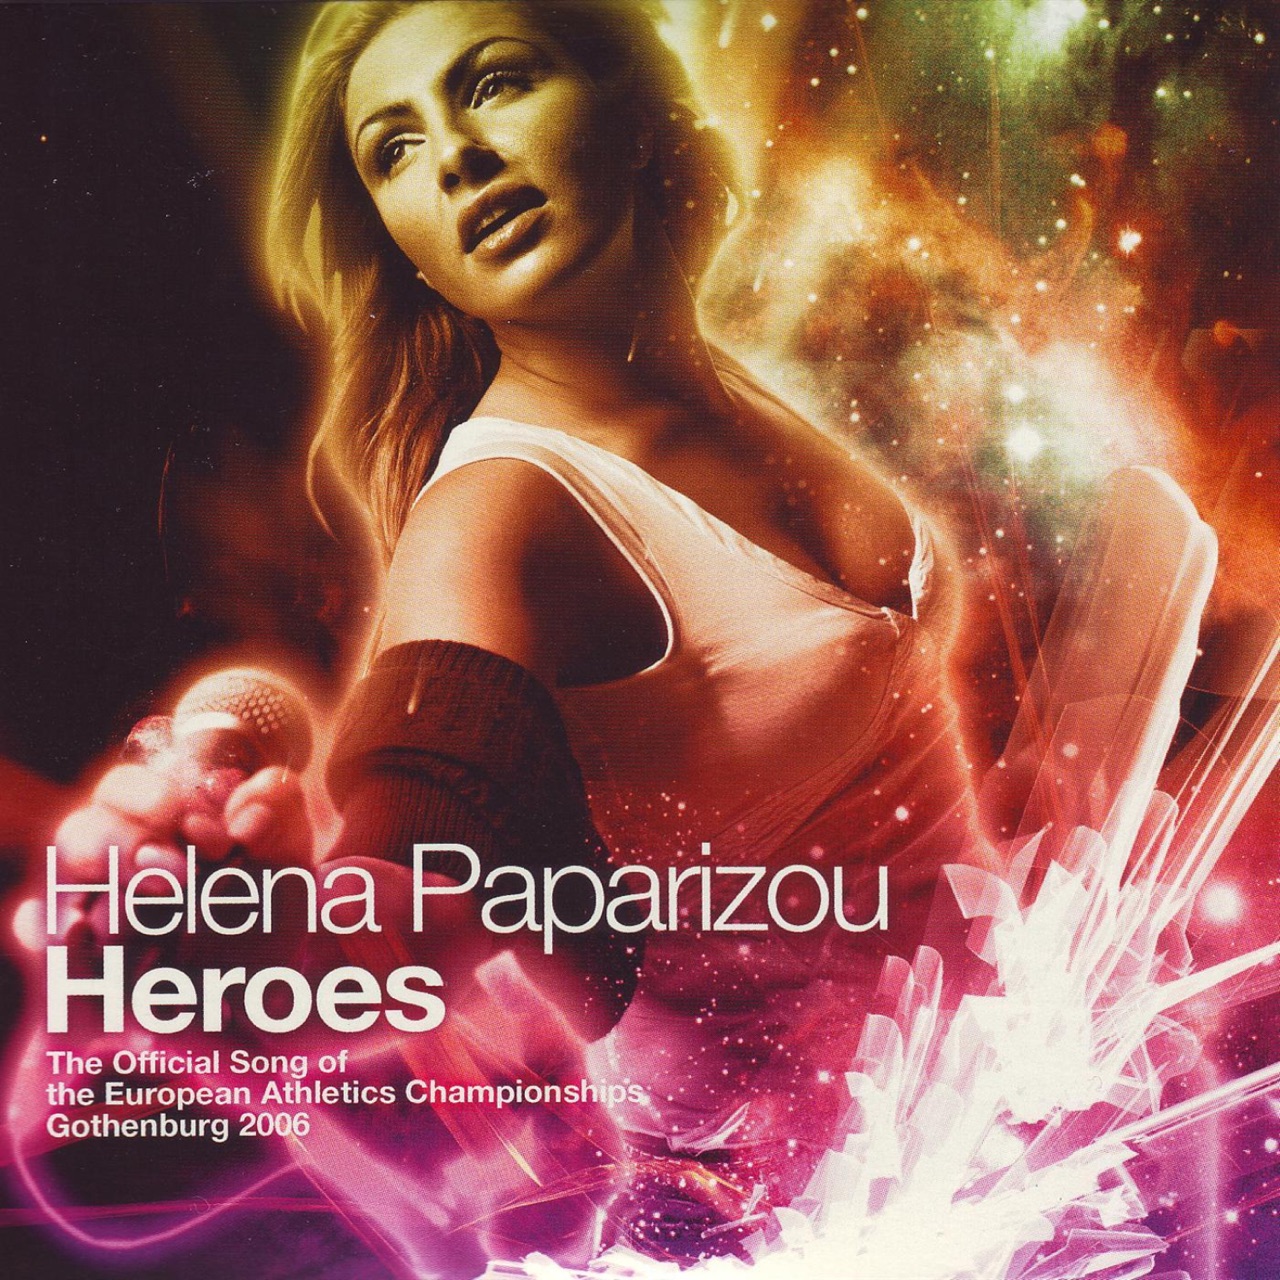 Helena Paparizou Heroes cover artwork